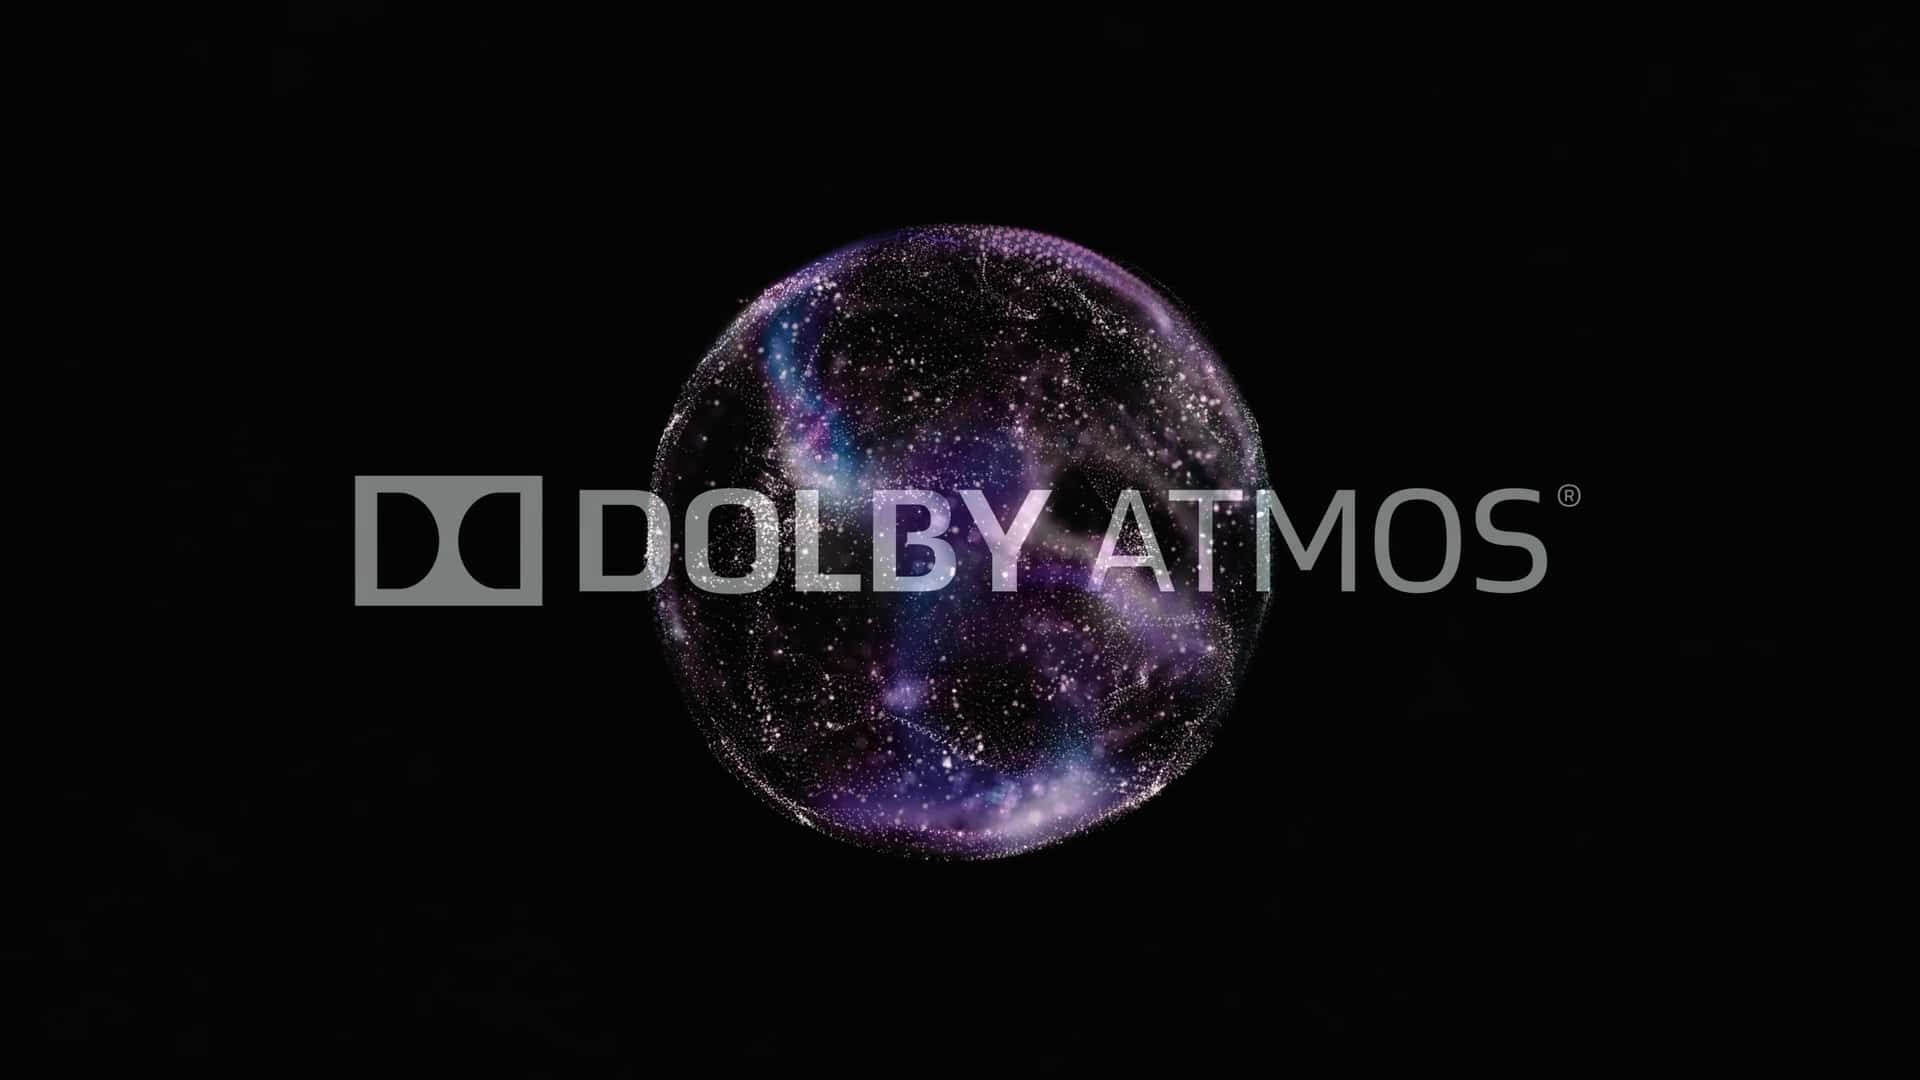 Cos’è il Dolby Atmos? Ce lo spiega Gianni Bini